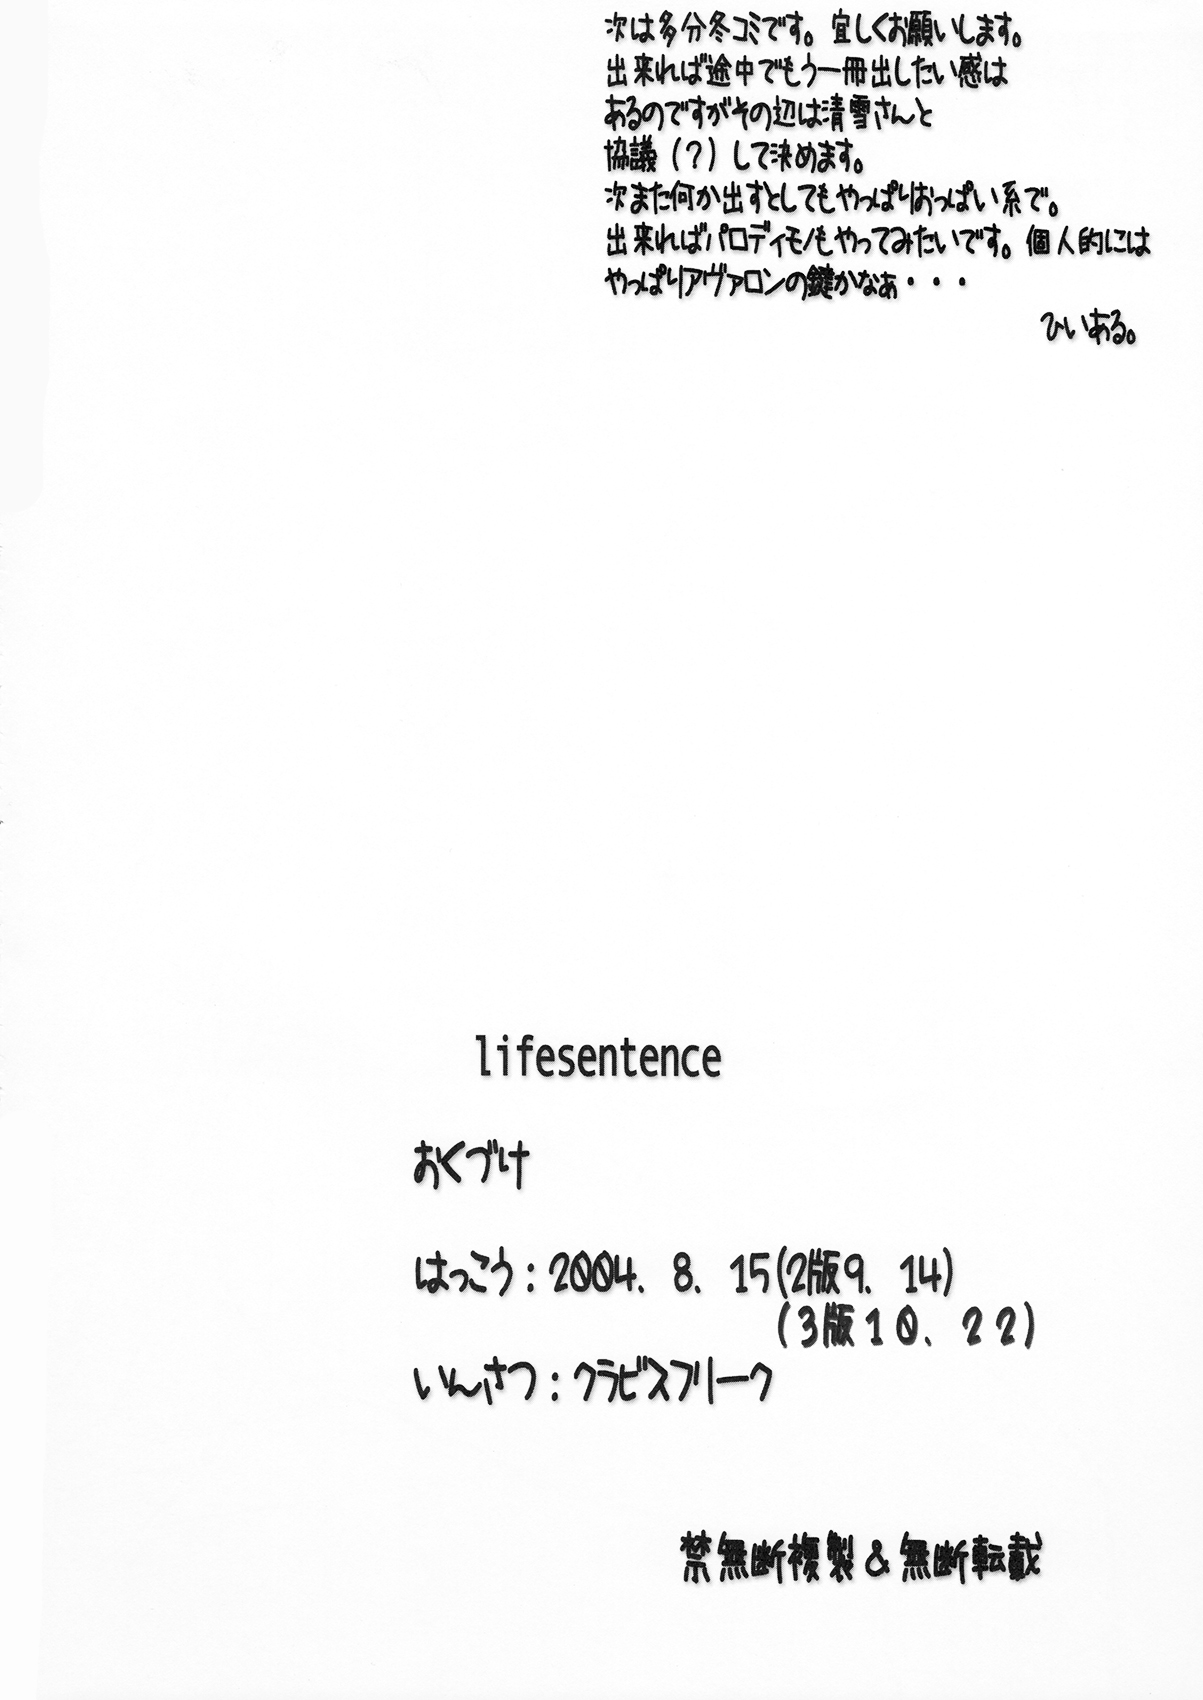 [でじたるたんばりん (ひいある, 清雪)] lifesentence (VIPER) [2004年10月22日]